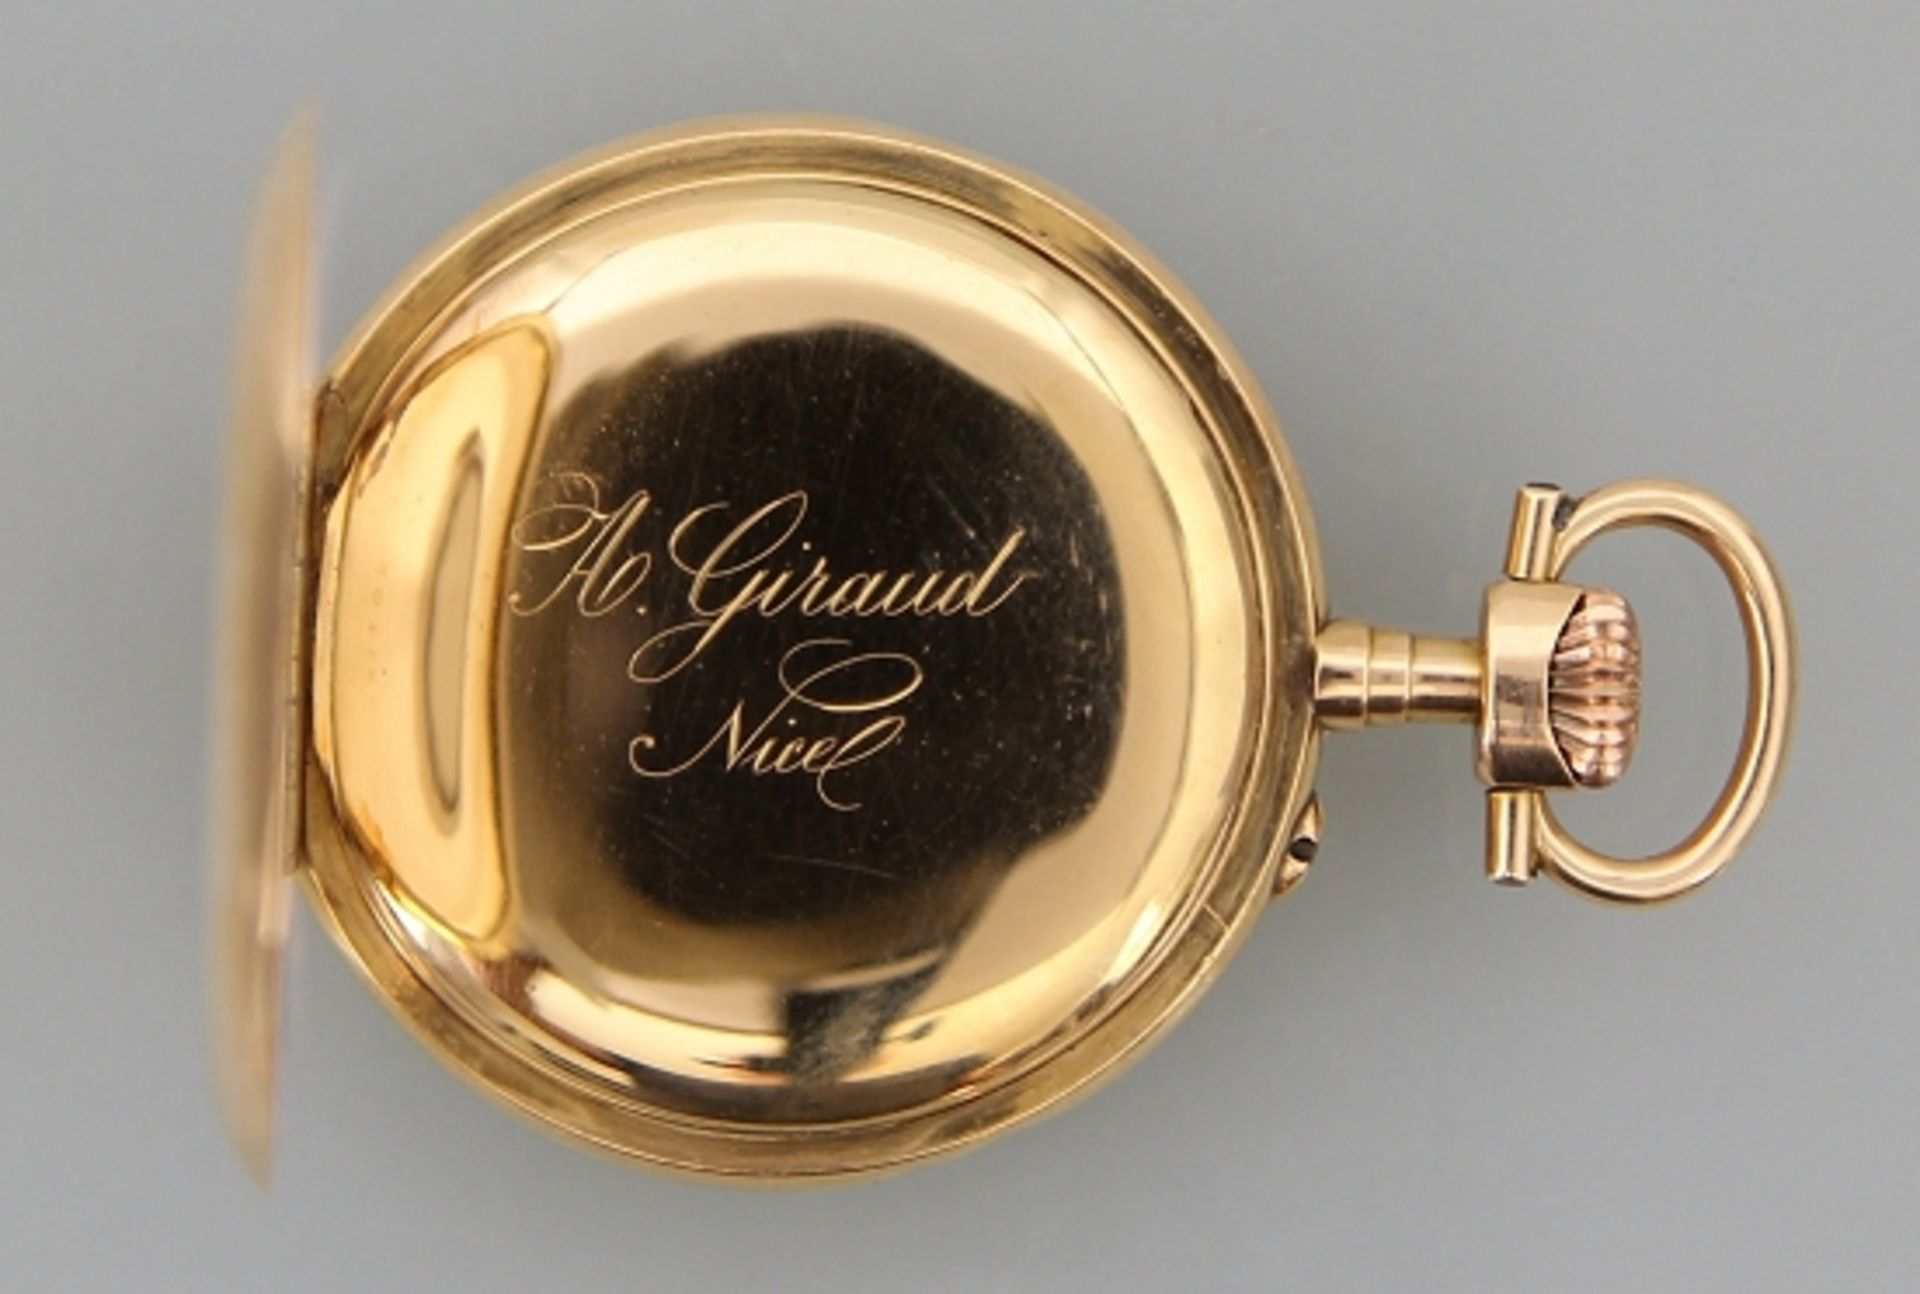 Gold - Chronometer - HTU "Giraud" - Image 2 of 3